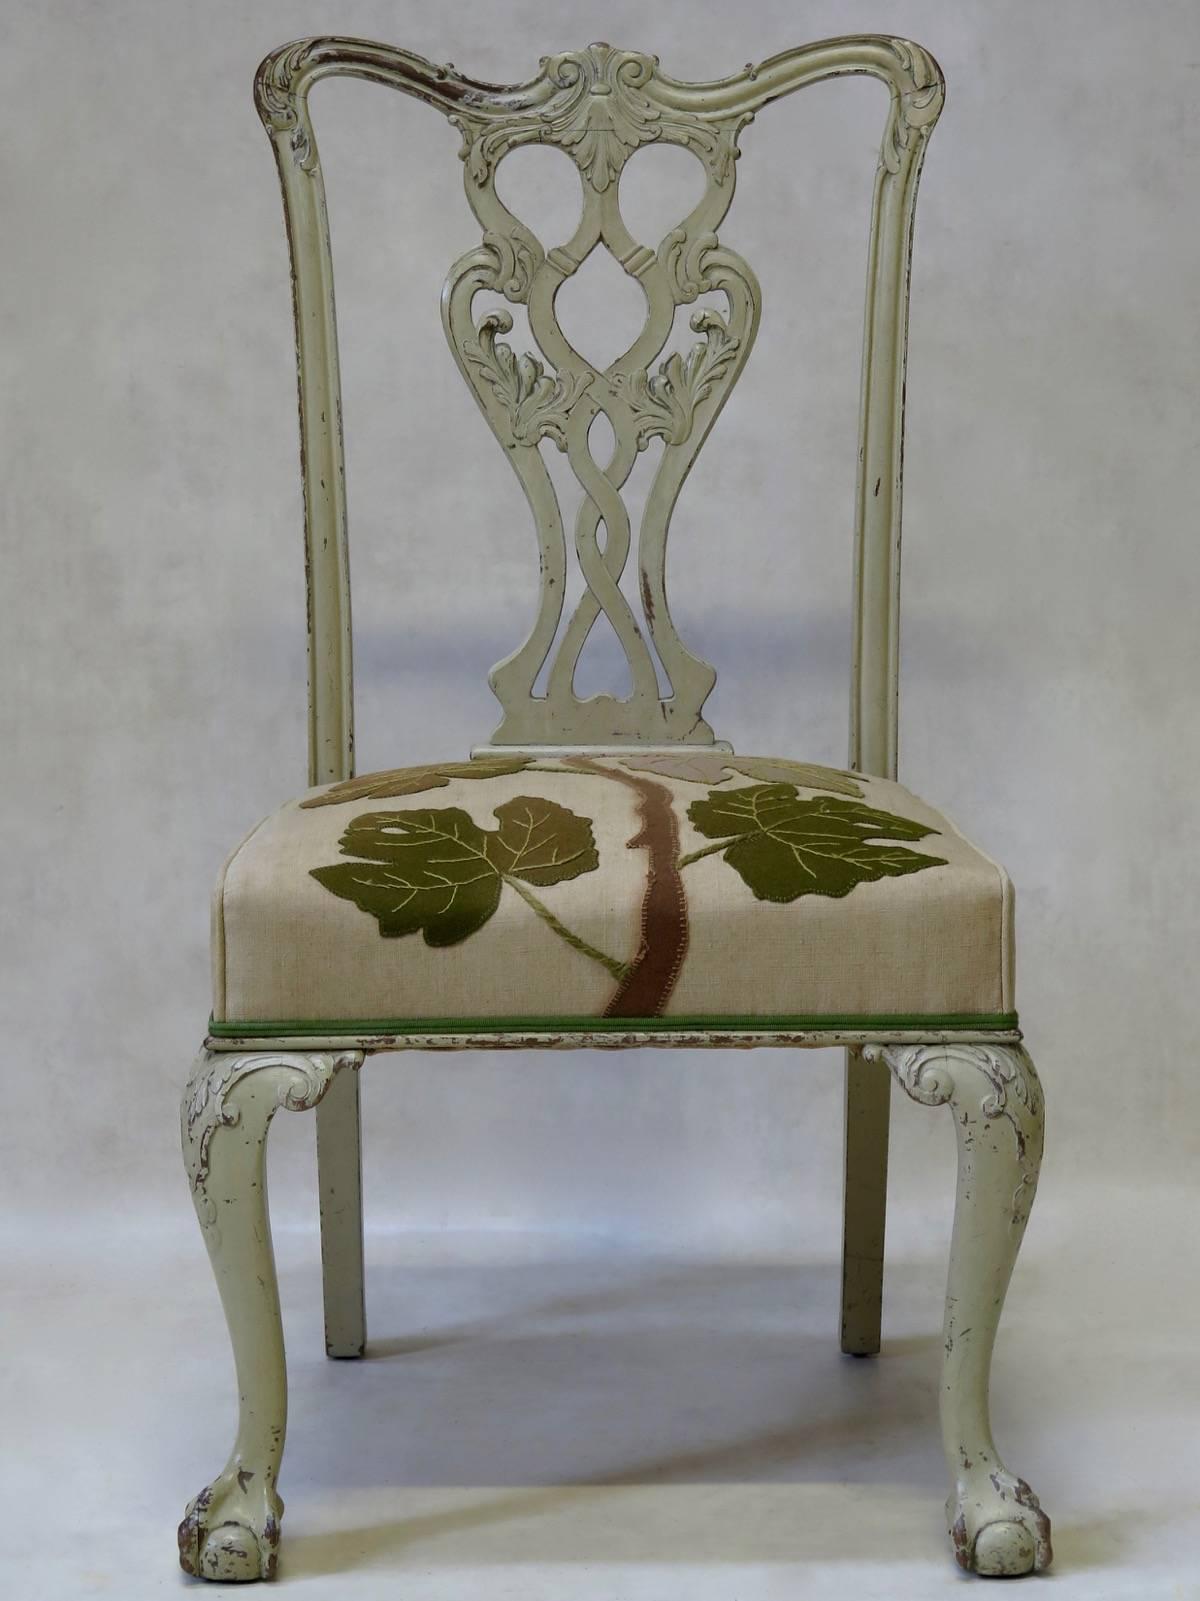 Sehr schöner, sehr gut gebauter und solider Stuhl im Chippendale-Stil, mit originaler, satter, cremefarbener Farbe. Der Stuhl hat großzügige Proportionen mit einer eleganten Rückenlehne, übertriebenen, geschnitzten Knien und massiven Klauen- und